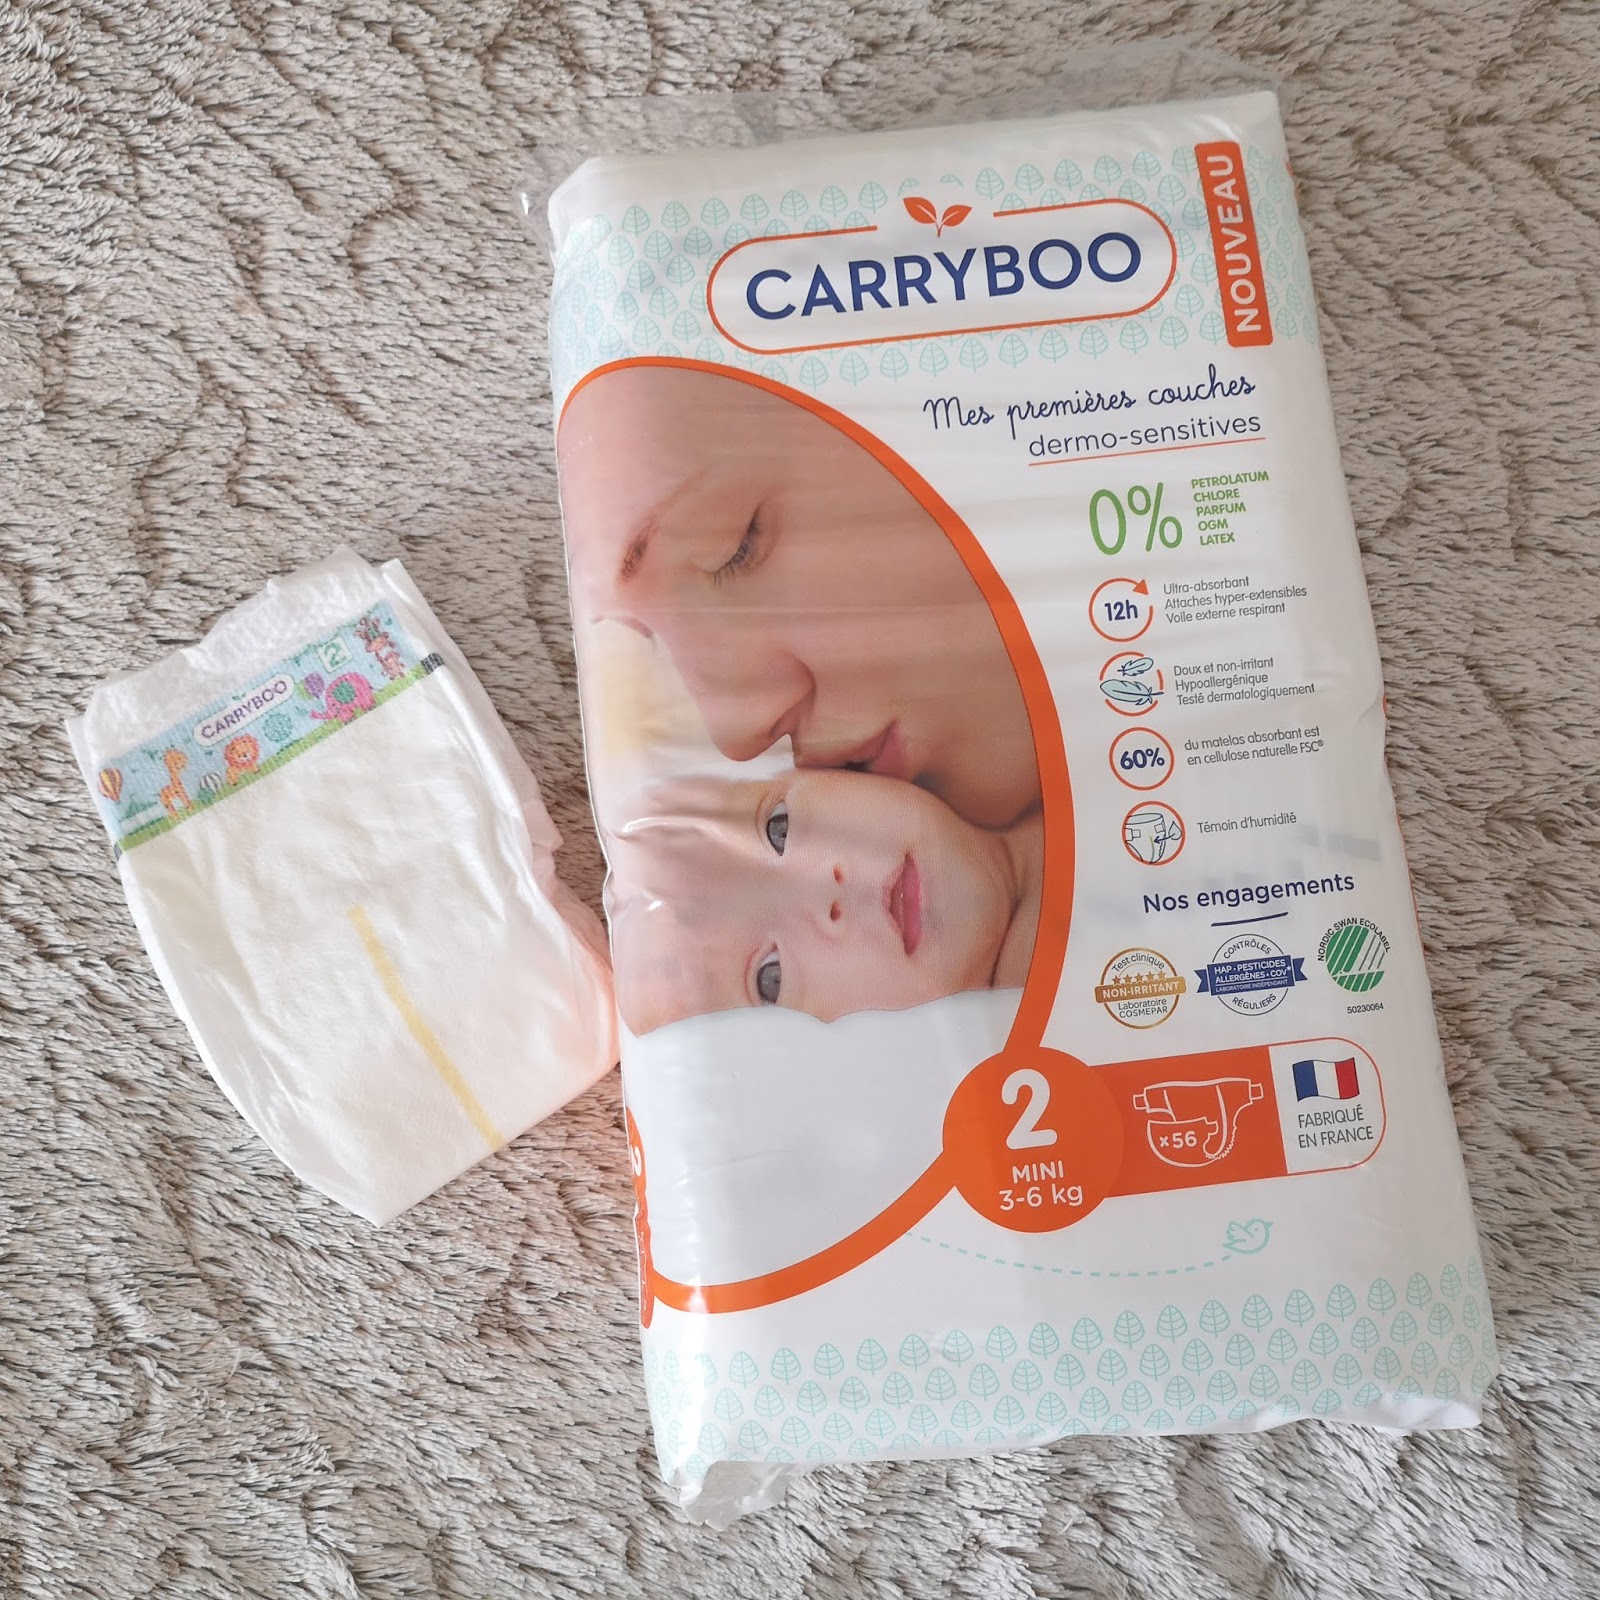 Le Blog de Lorraine: Carryboo, des couches made in France pour bébé